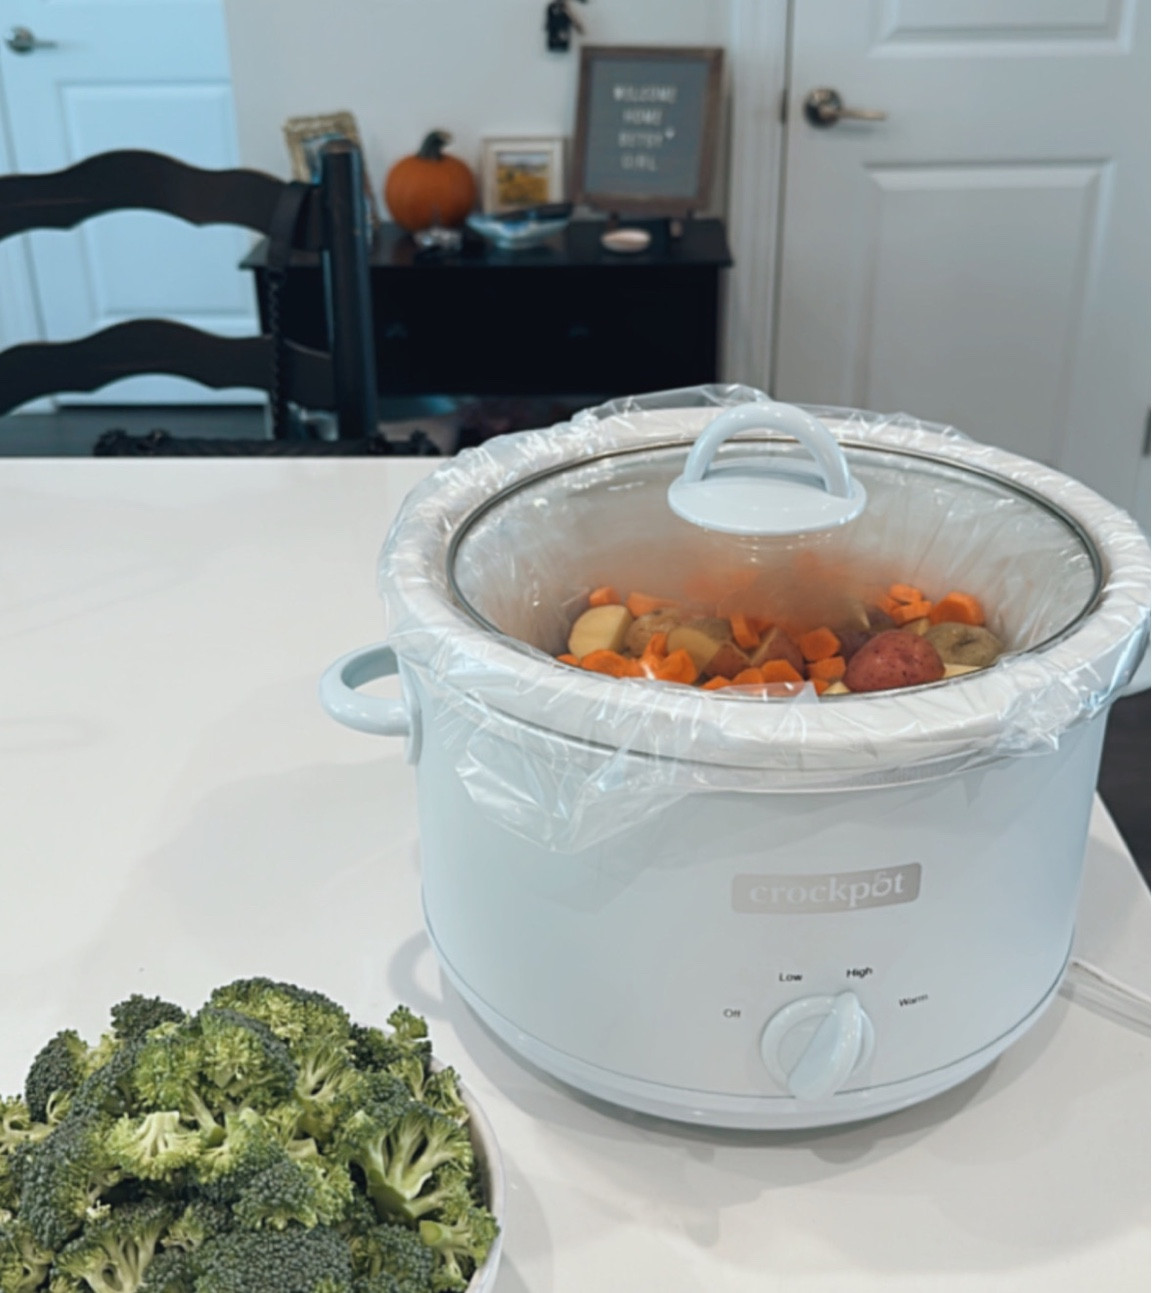 Crock-Pot + 4.5qt Manual Slow Cooker – Light Blue